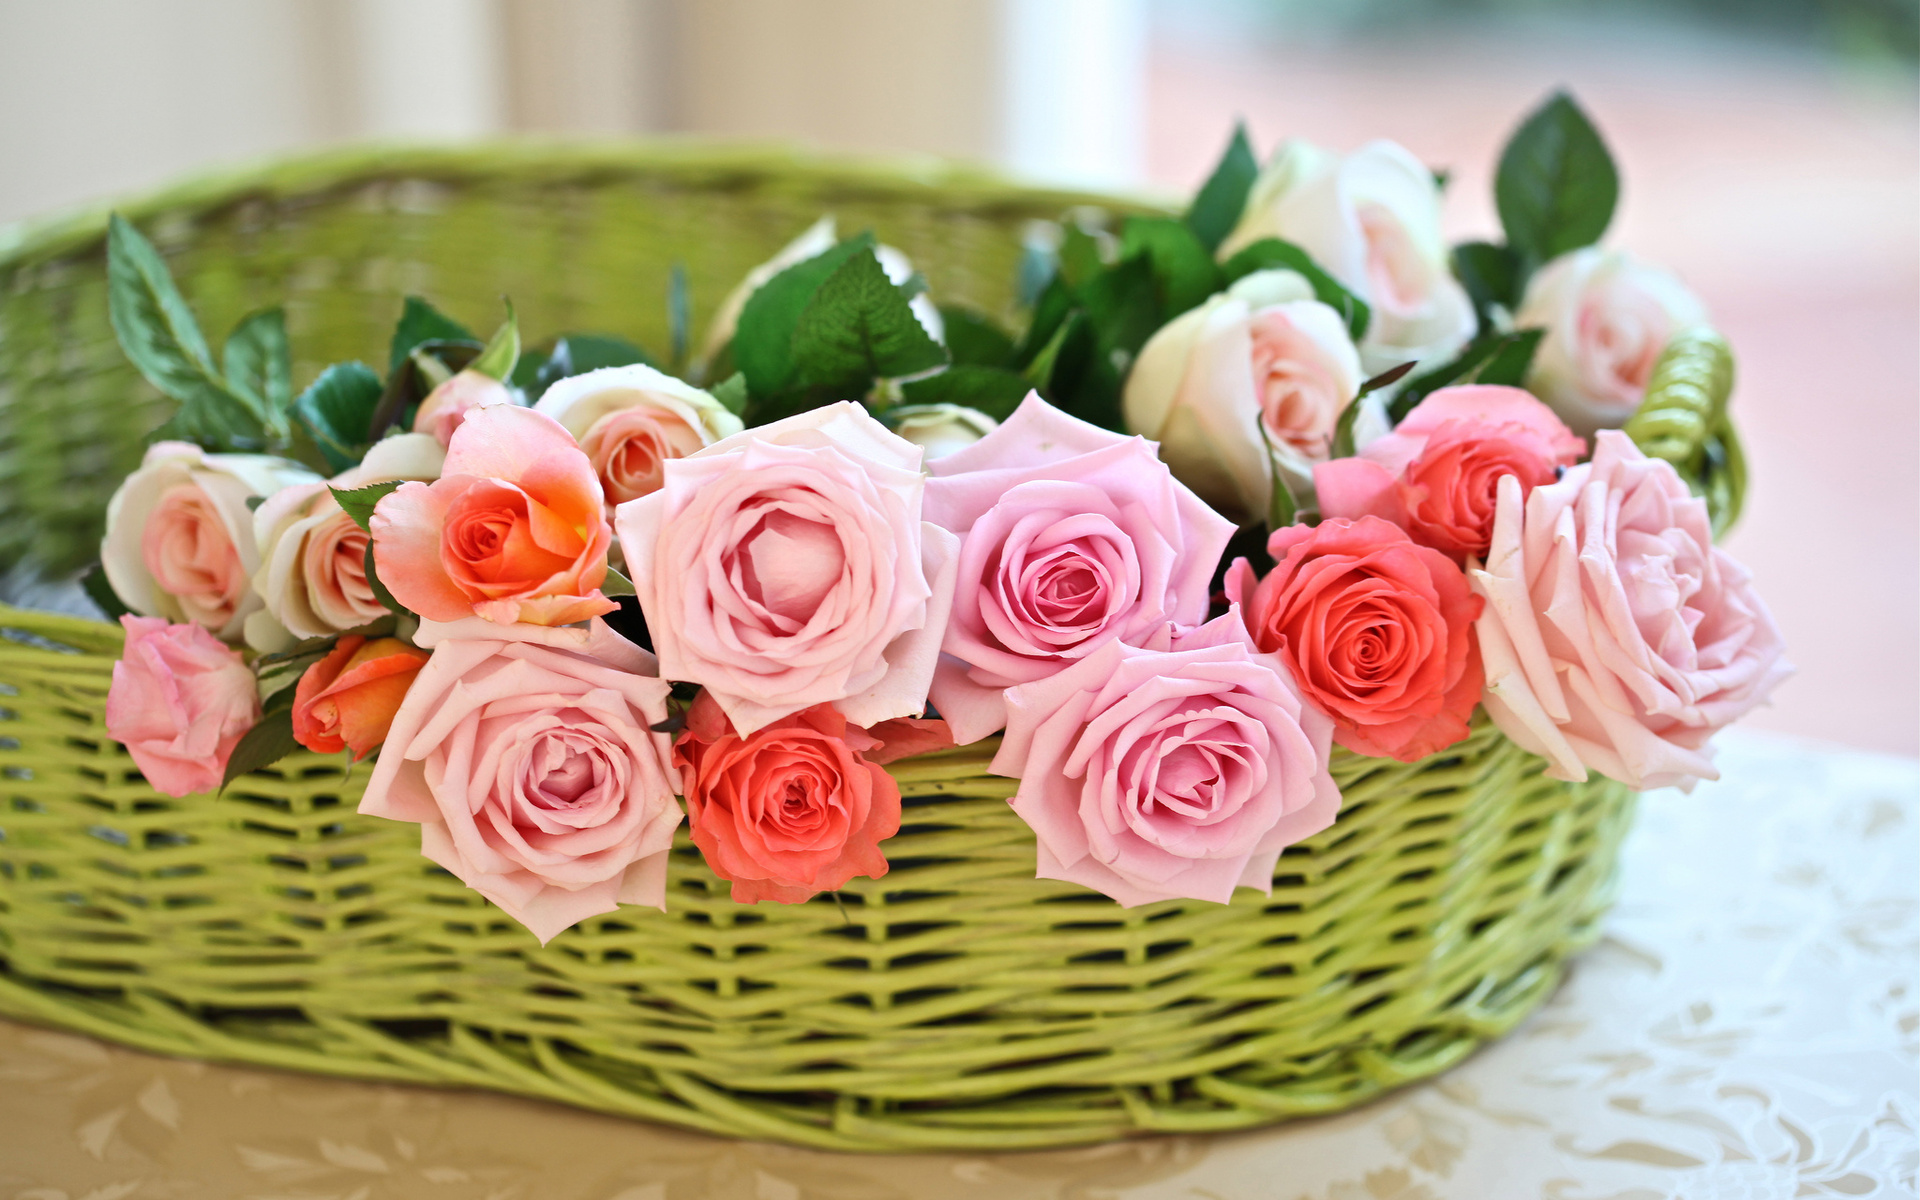 Bouquets, Still life, Flowers, Basket, Pink, Petals, Plants: Nếu bạn là tín đồ của những bức ảnh hoa với nhiều thể loại khác nhau thì chúng tôi tổng hợp những bức ảnh về bouquet, hoa cắm trong giỏ và cả hoa nghệ thuật cho bạn. Nó chứa đựng vẻ đẹp của những cánh hoa tươi tắn và chúng sẽ giúp bạn thư giãn sau một ngày làm việc mệt mỏi.